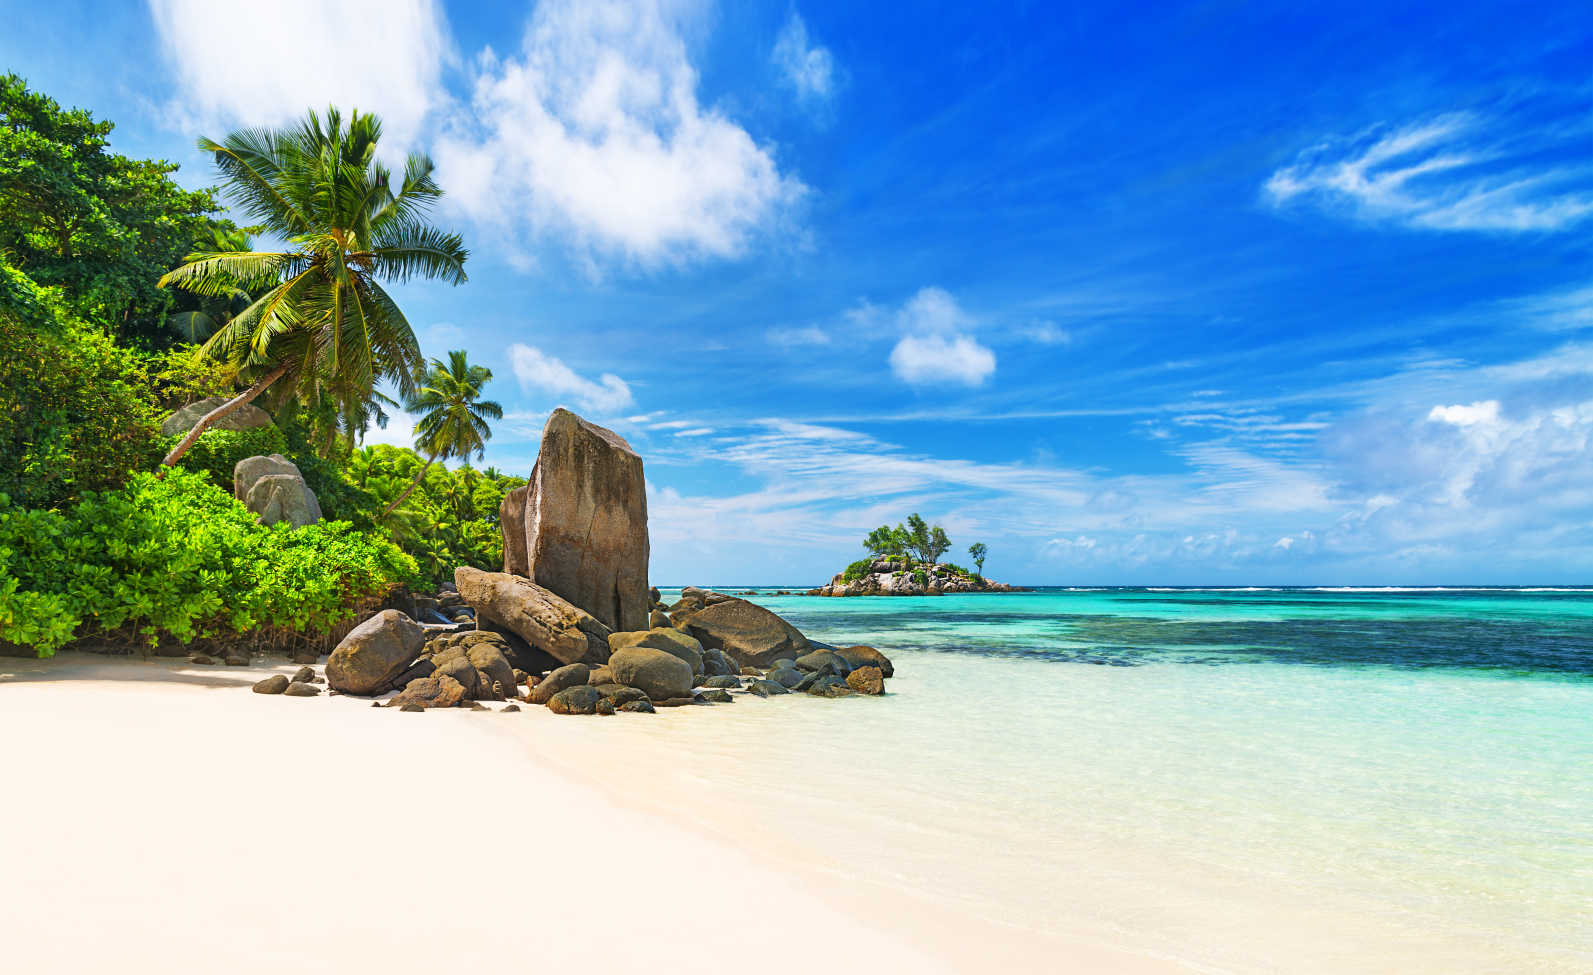 Vue de la plage d'Anse Royale sur l'île de Mahe, Seychelles.